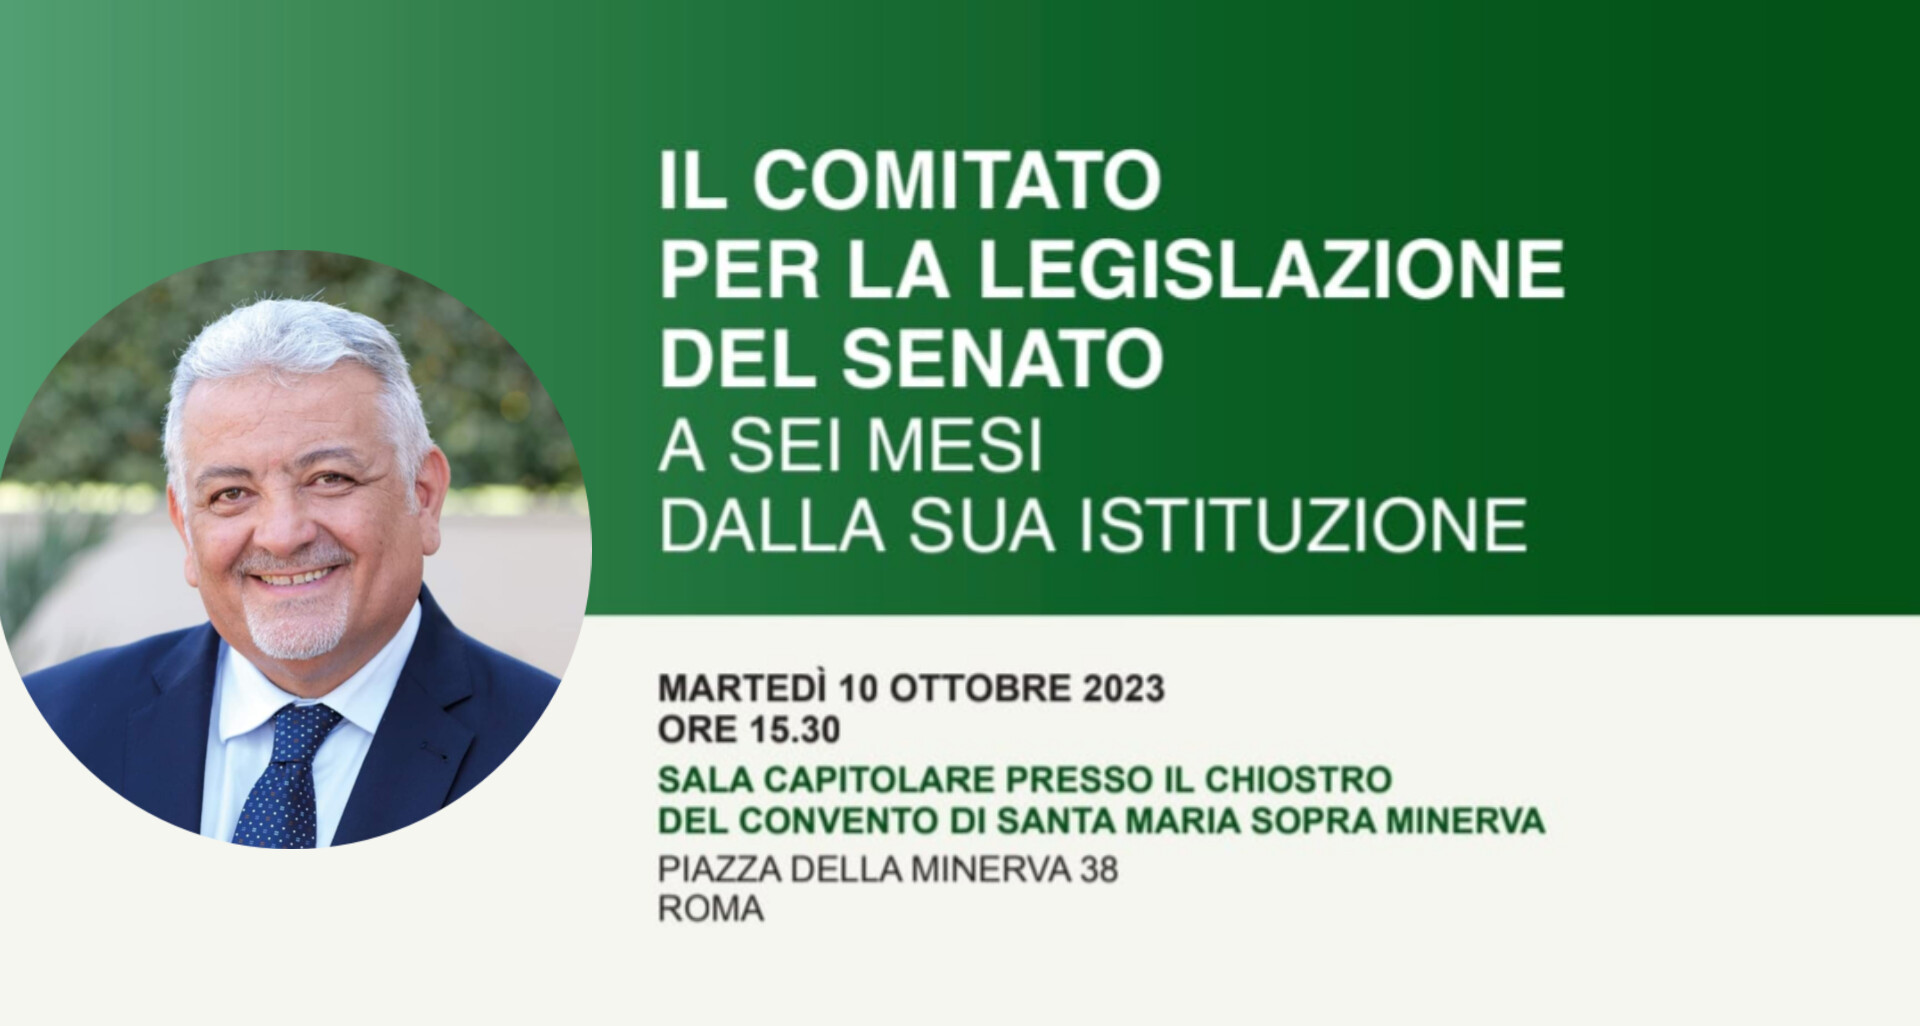 Domani al Senato Matera racconta i primi sei mesi del Comitato per la Legislazione